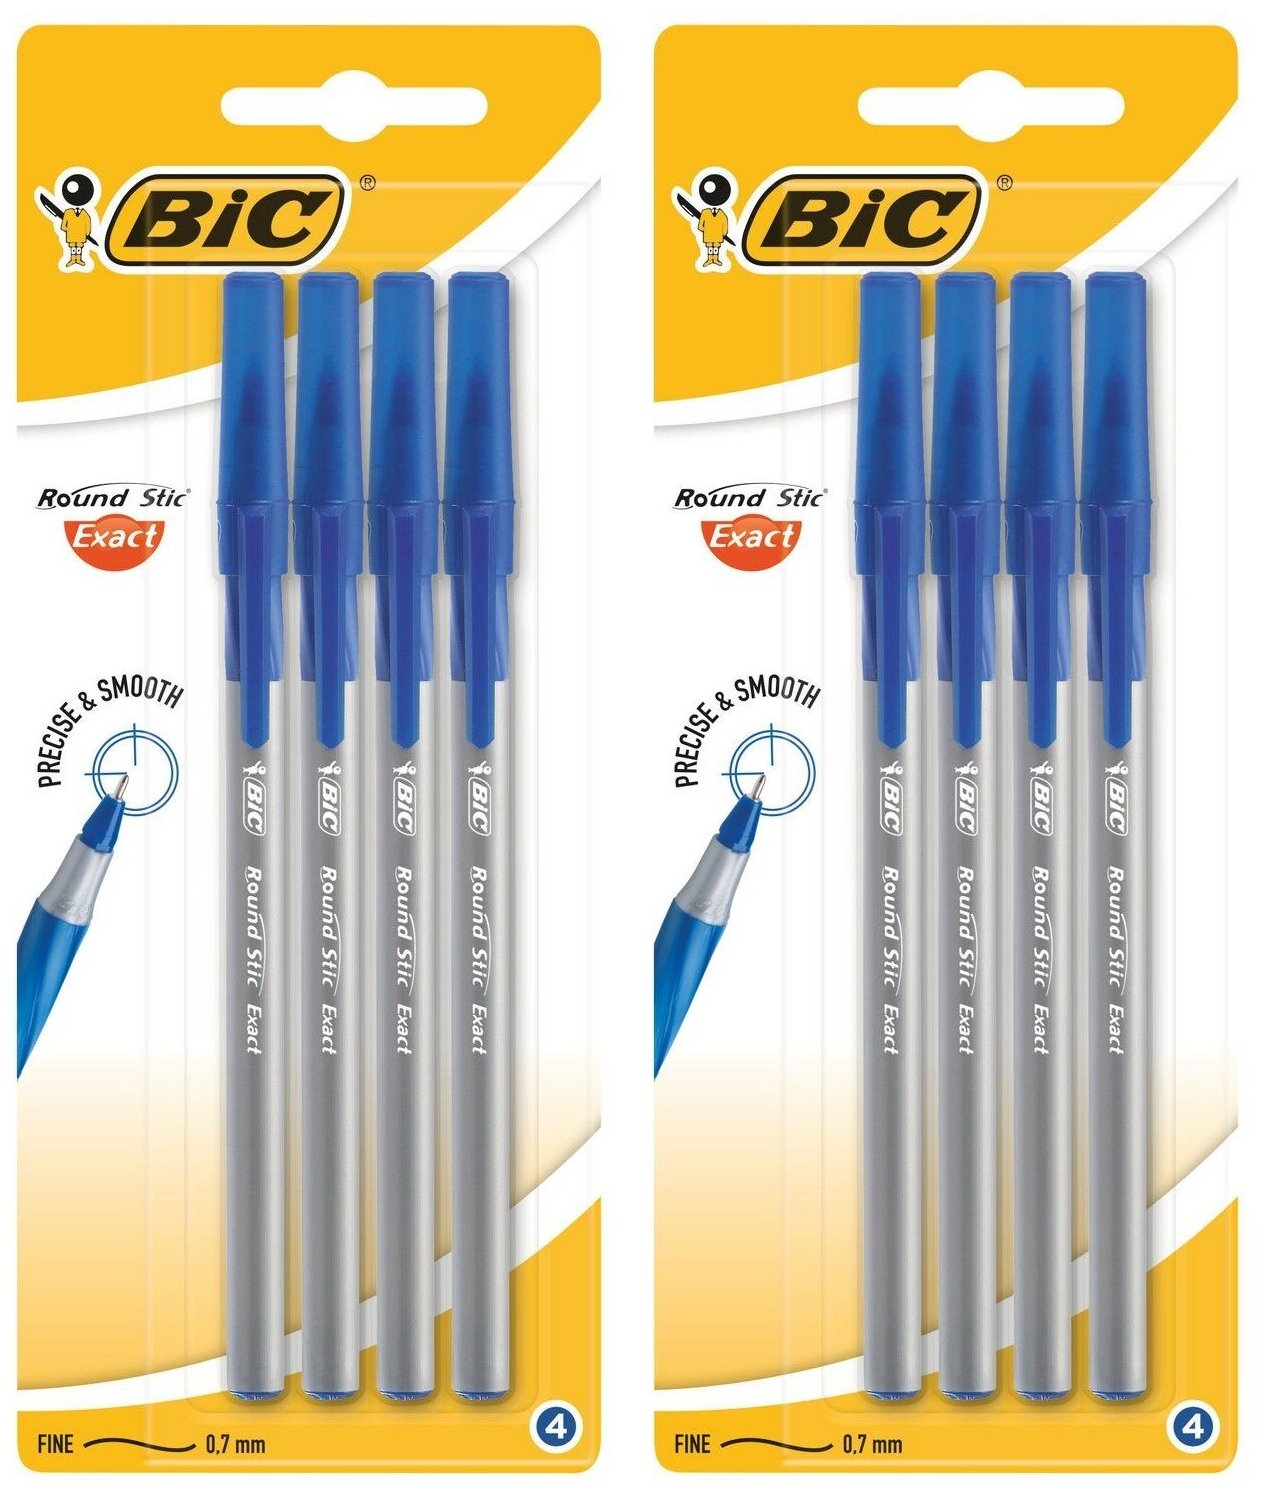 BIC Ручка шариковая Round Stic Exact синяя 4 шт в упаковке, 2 набора